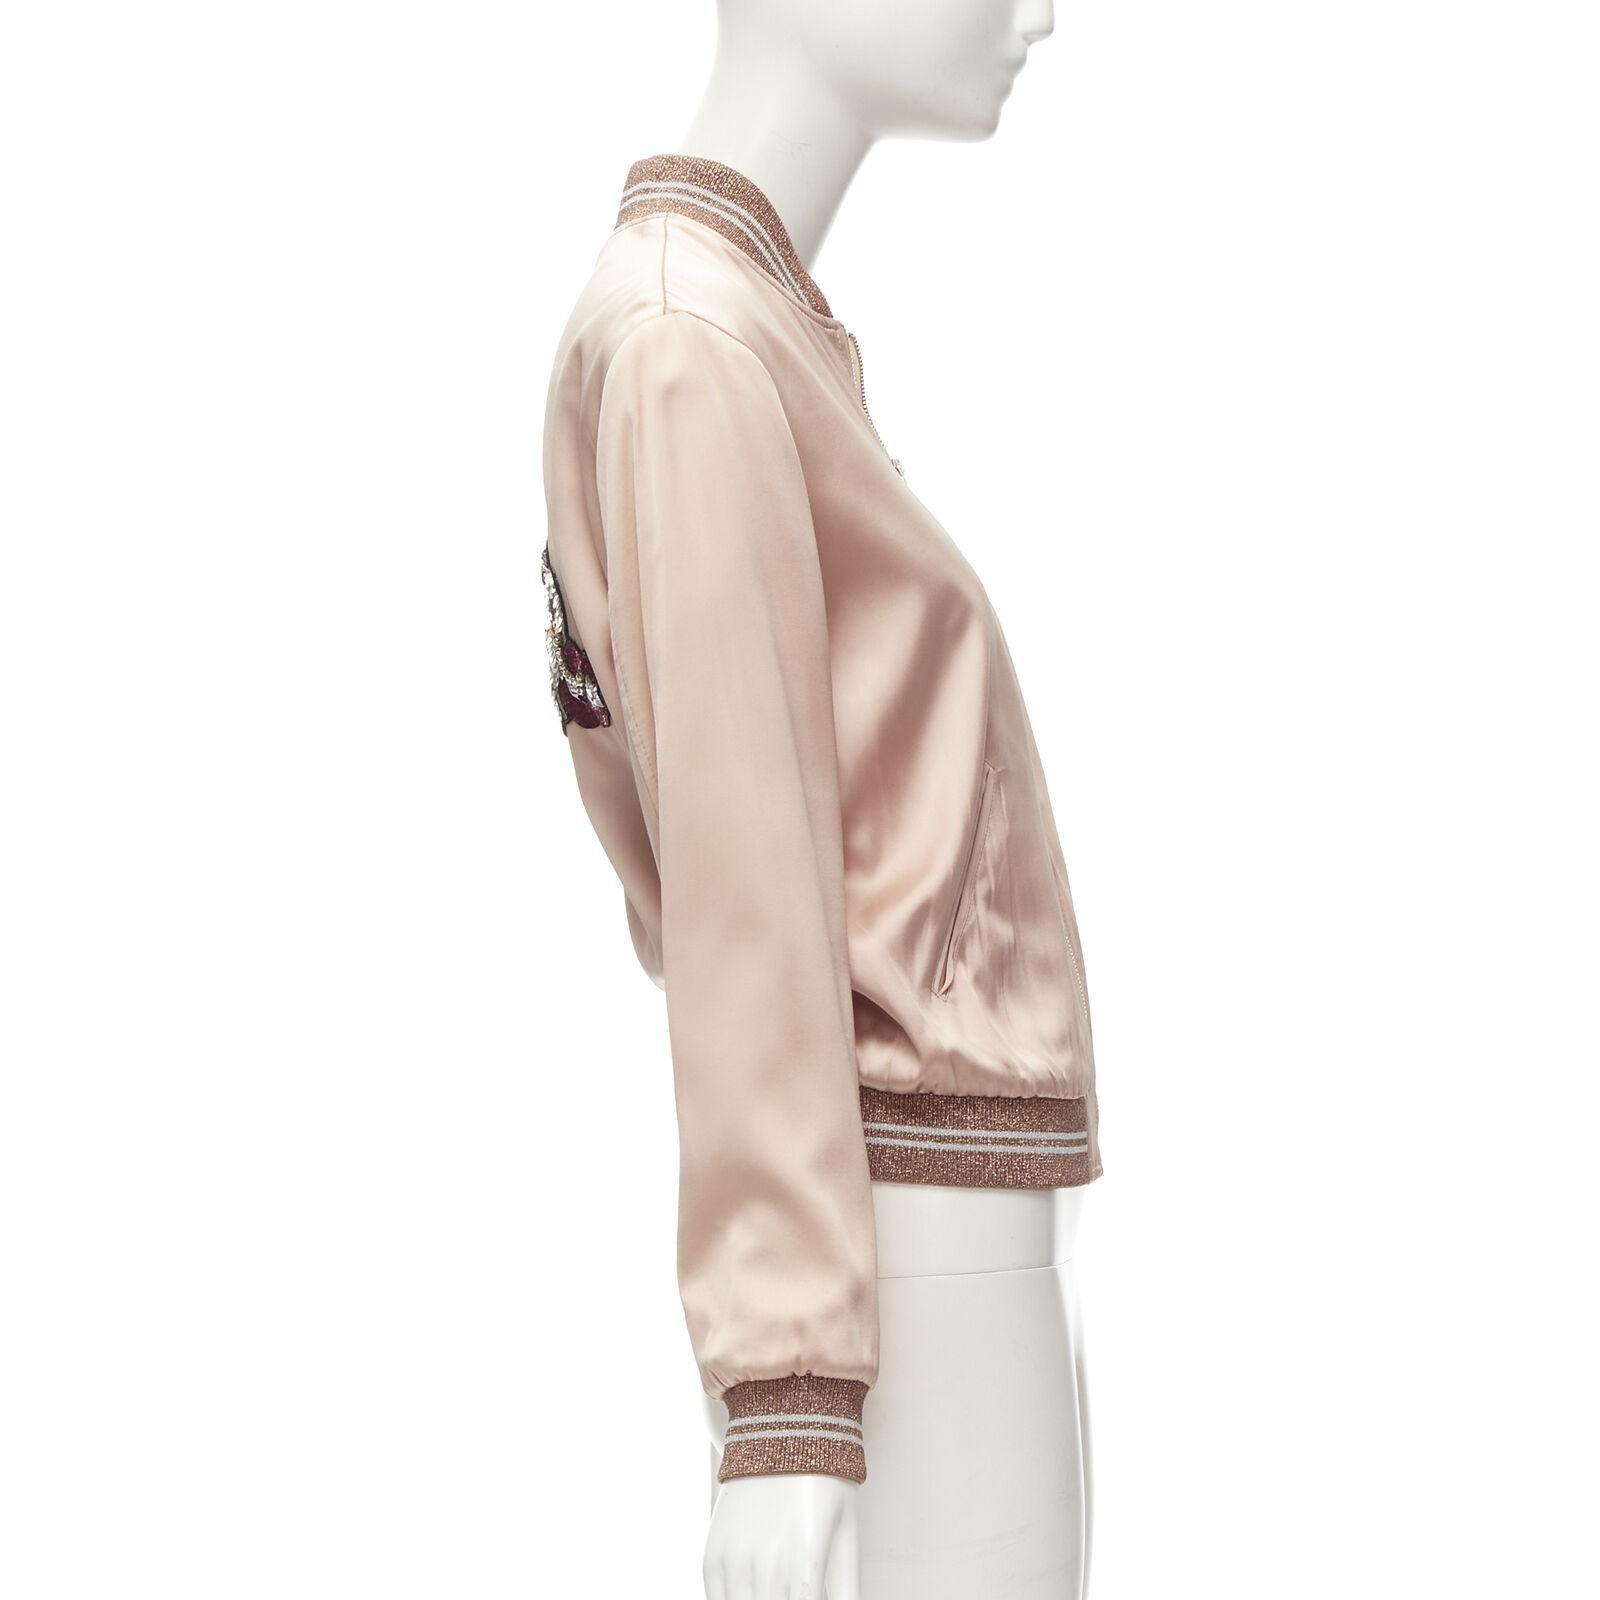 SAINT LAURENT HEDI SLIMANE 2016 love sequins pink satin bomber FR36 S For Sale 3